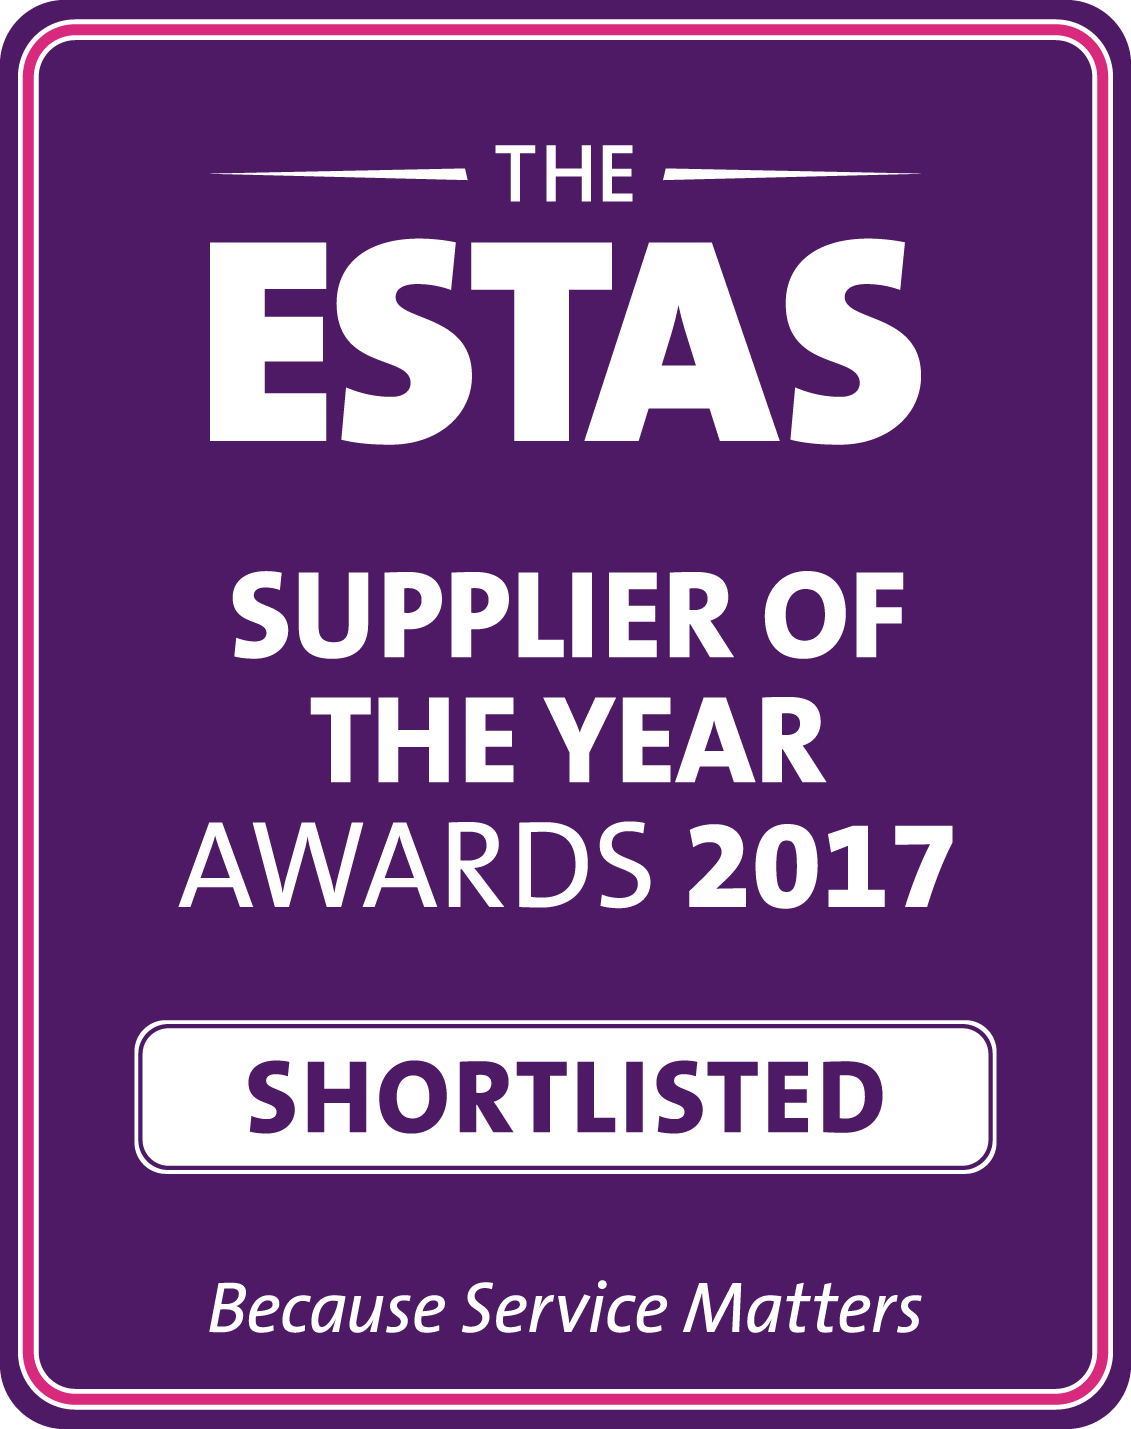 ESTAS Supplier Of The Year Award 2017